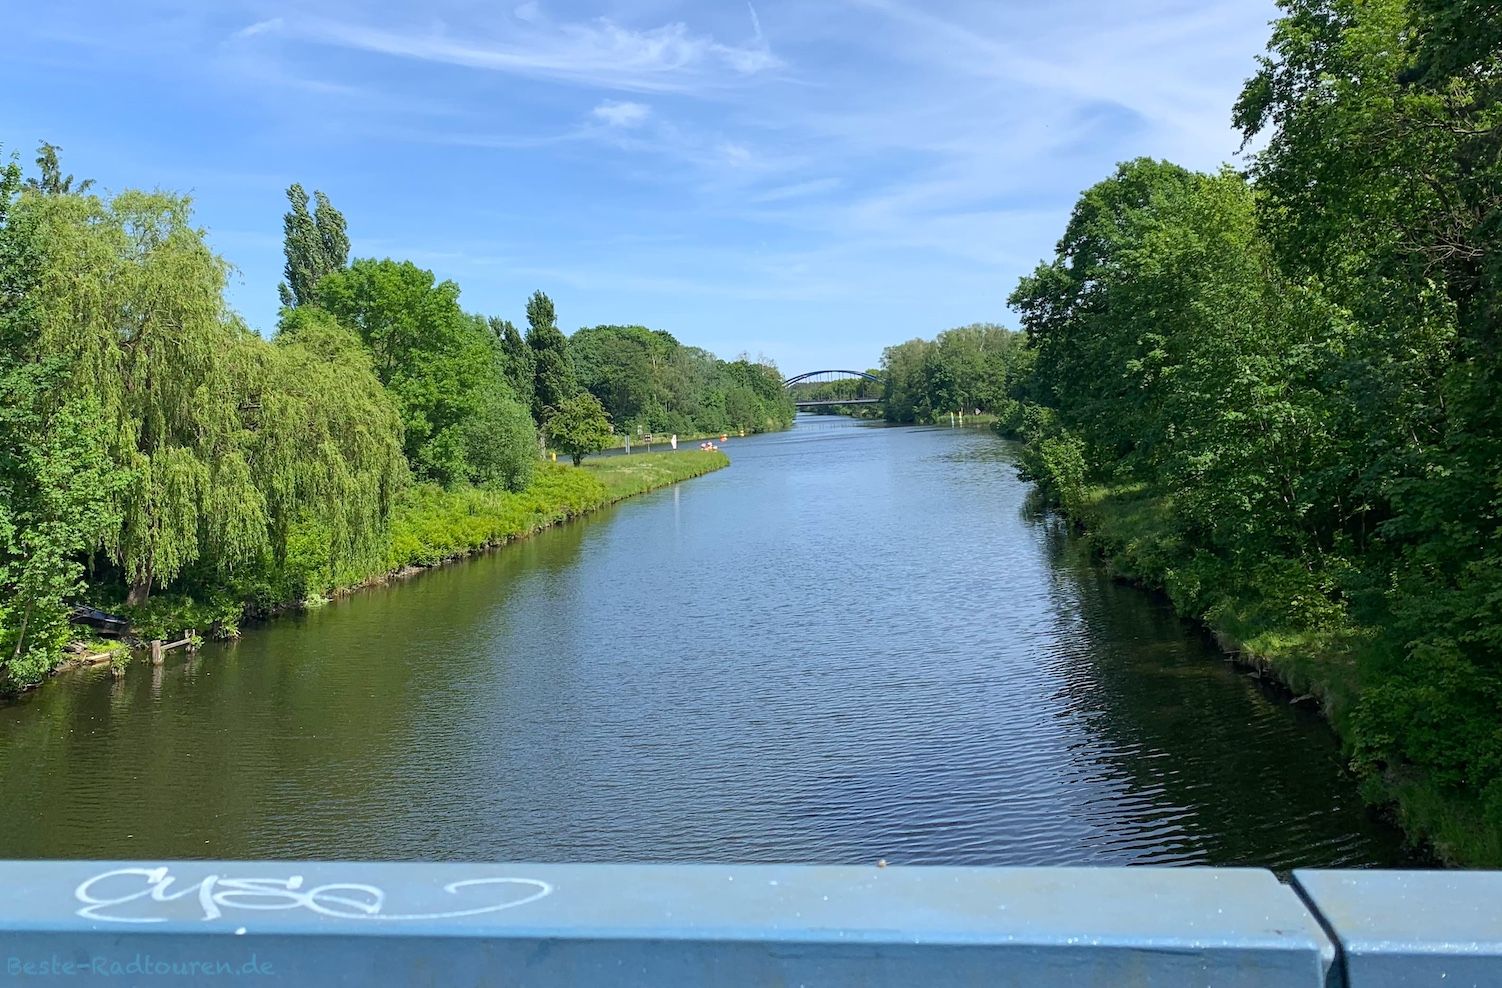 Foto vom Oder-Havel-Radweg und vom Treidelweg aus: Radfahrerbrücke bei Zerpenschleuse, Kreuzung Finowkanal - Oder-Havel-Kanal